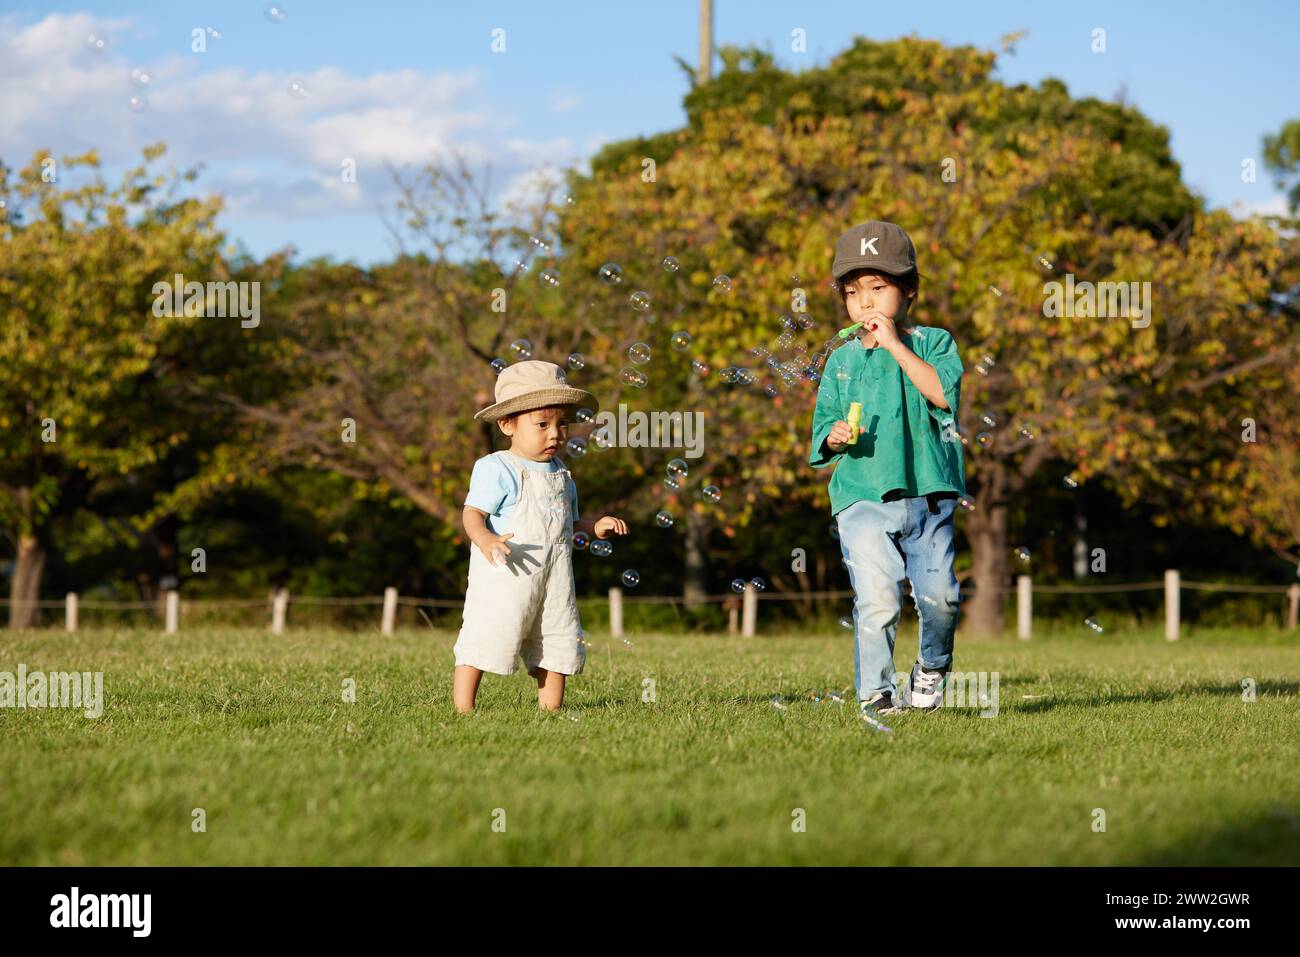 Deux enfants jouant dans un champ Banque D'Images